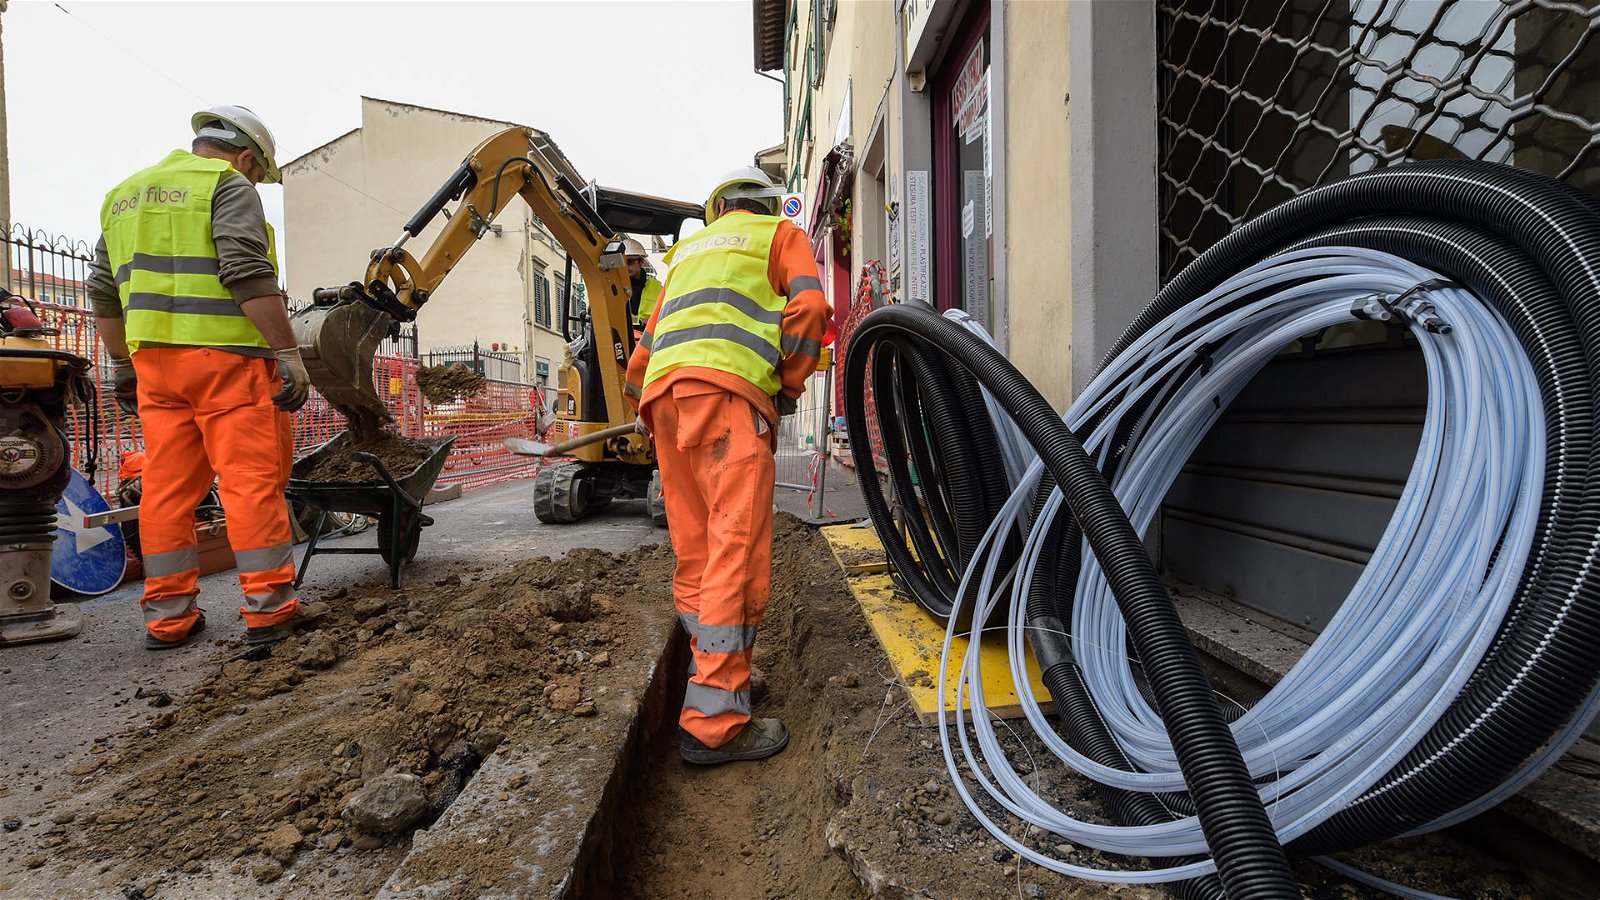 Immagine di Open Fiber propone a Bruxelles lo switch-off delle reti: dal rame alla fibra (FTTH) almeno nei centri urbani